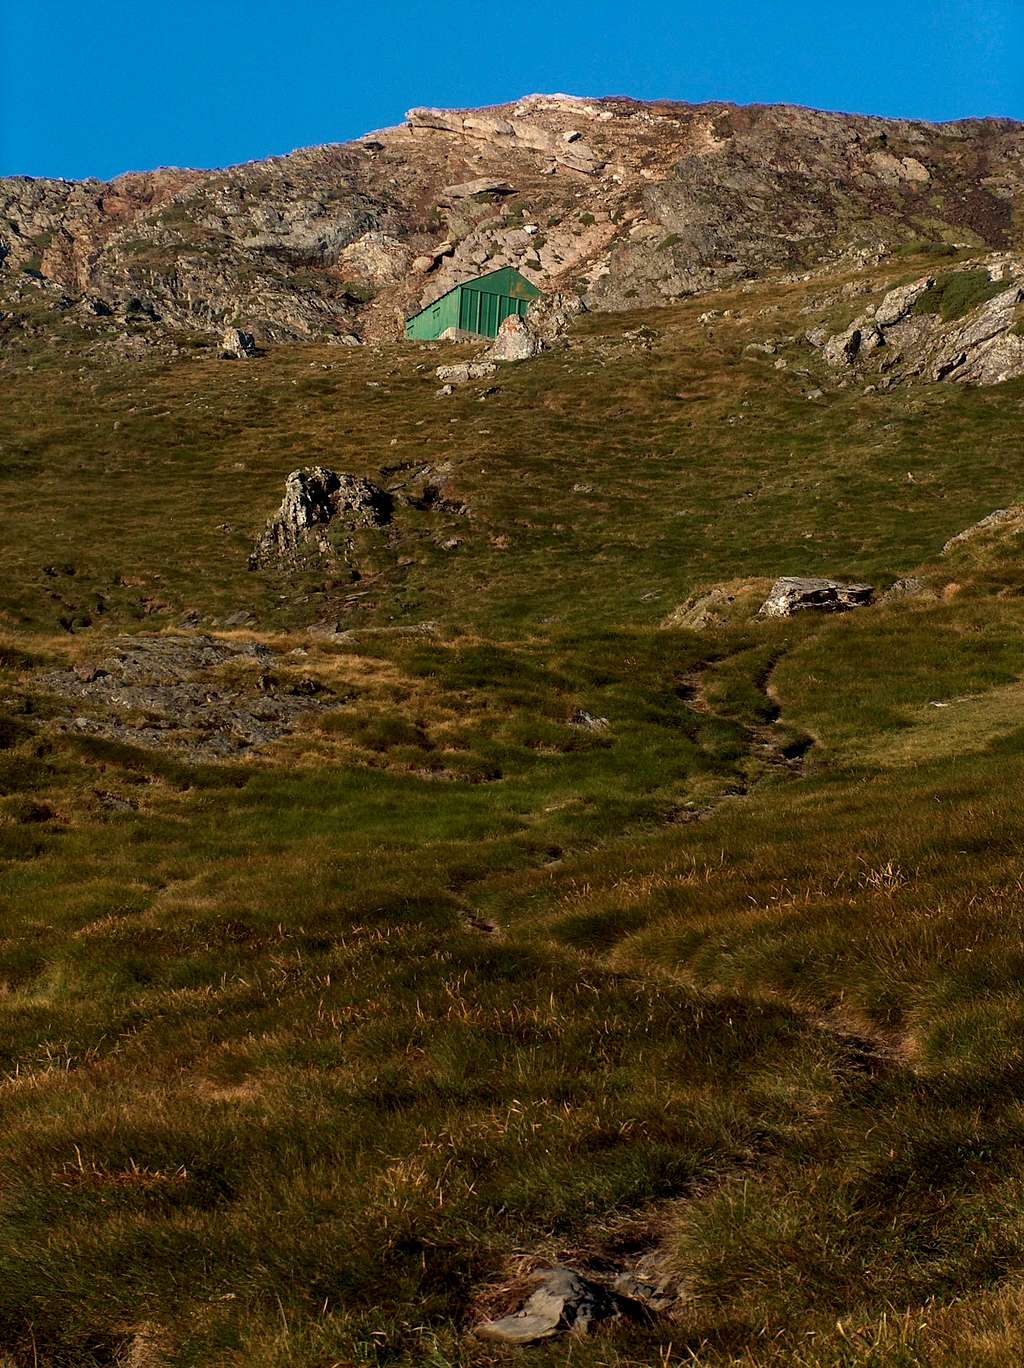 Reaching the green hut on the Sarrouyès pass